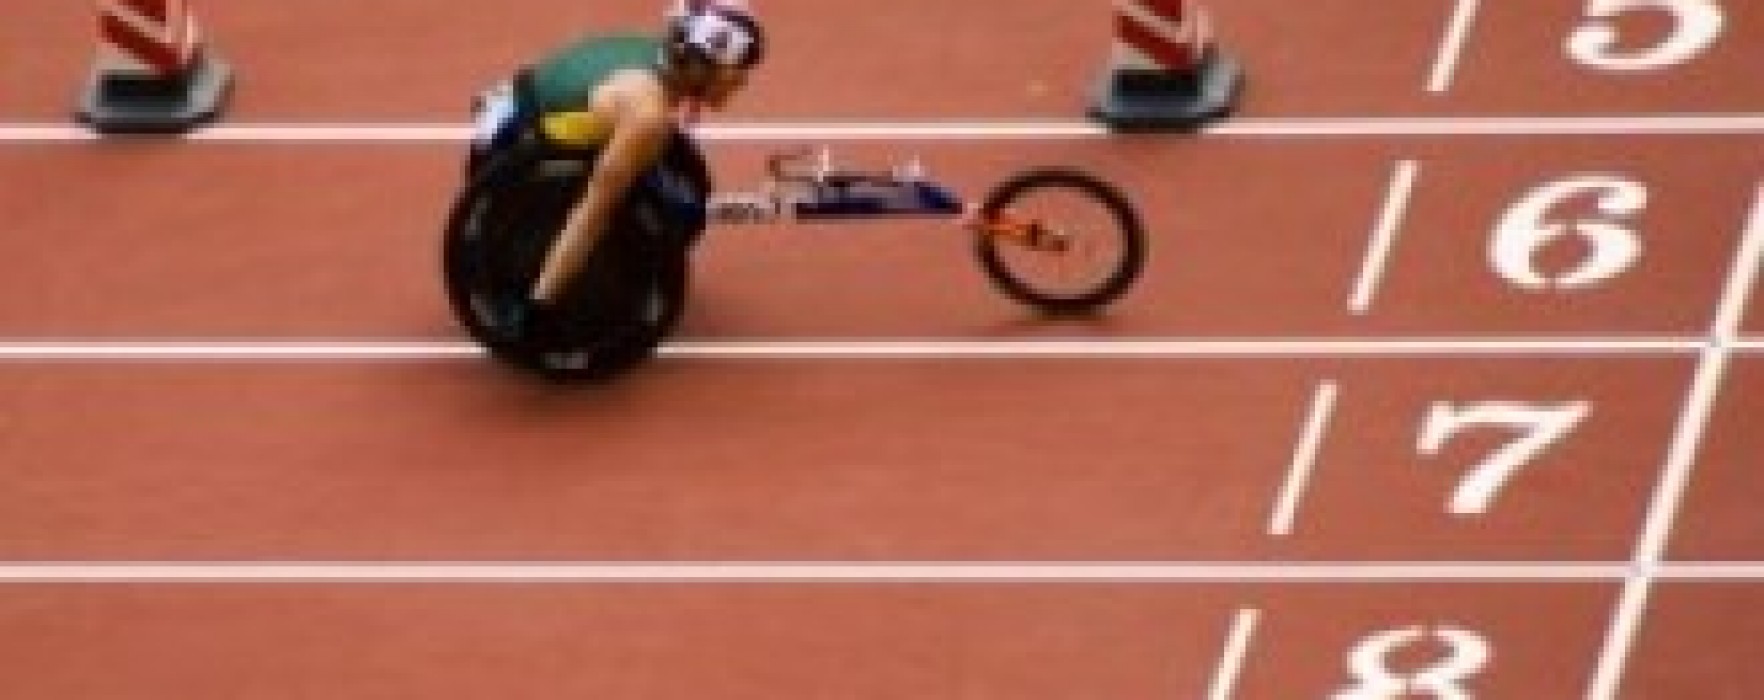 Paralimpiadi: omaggio agli atleti